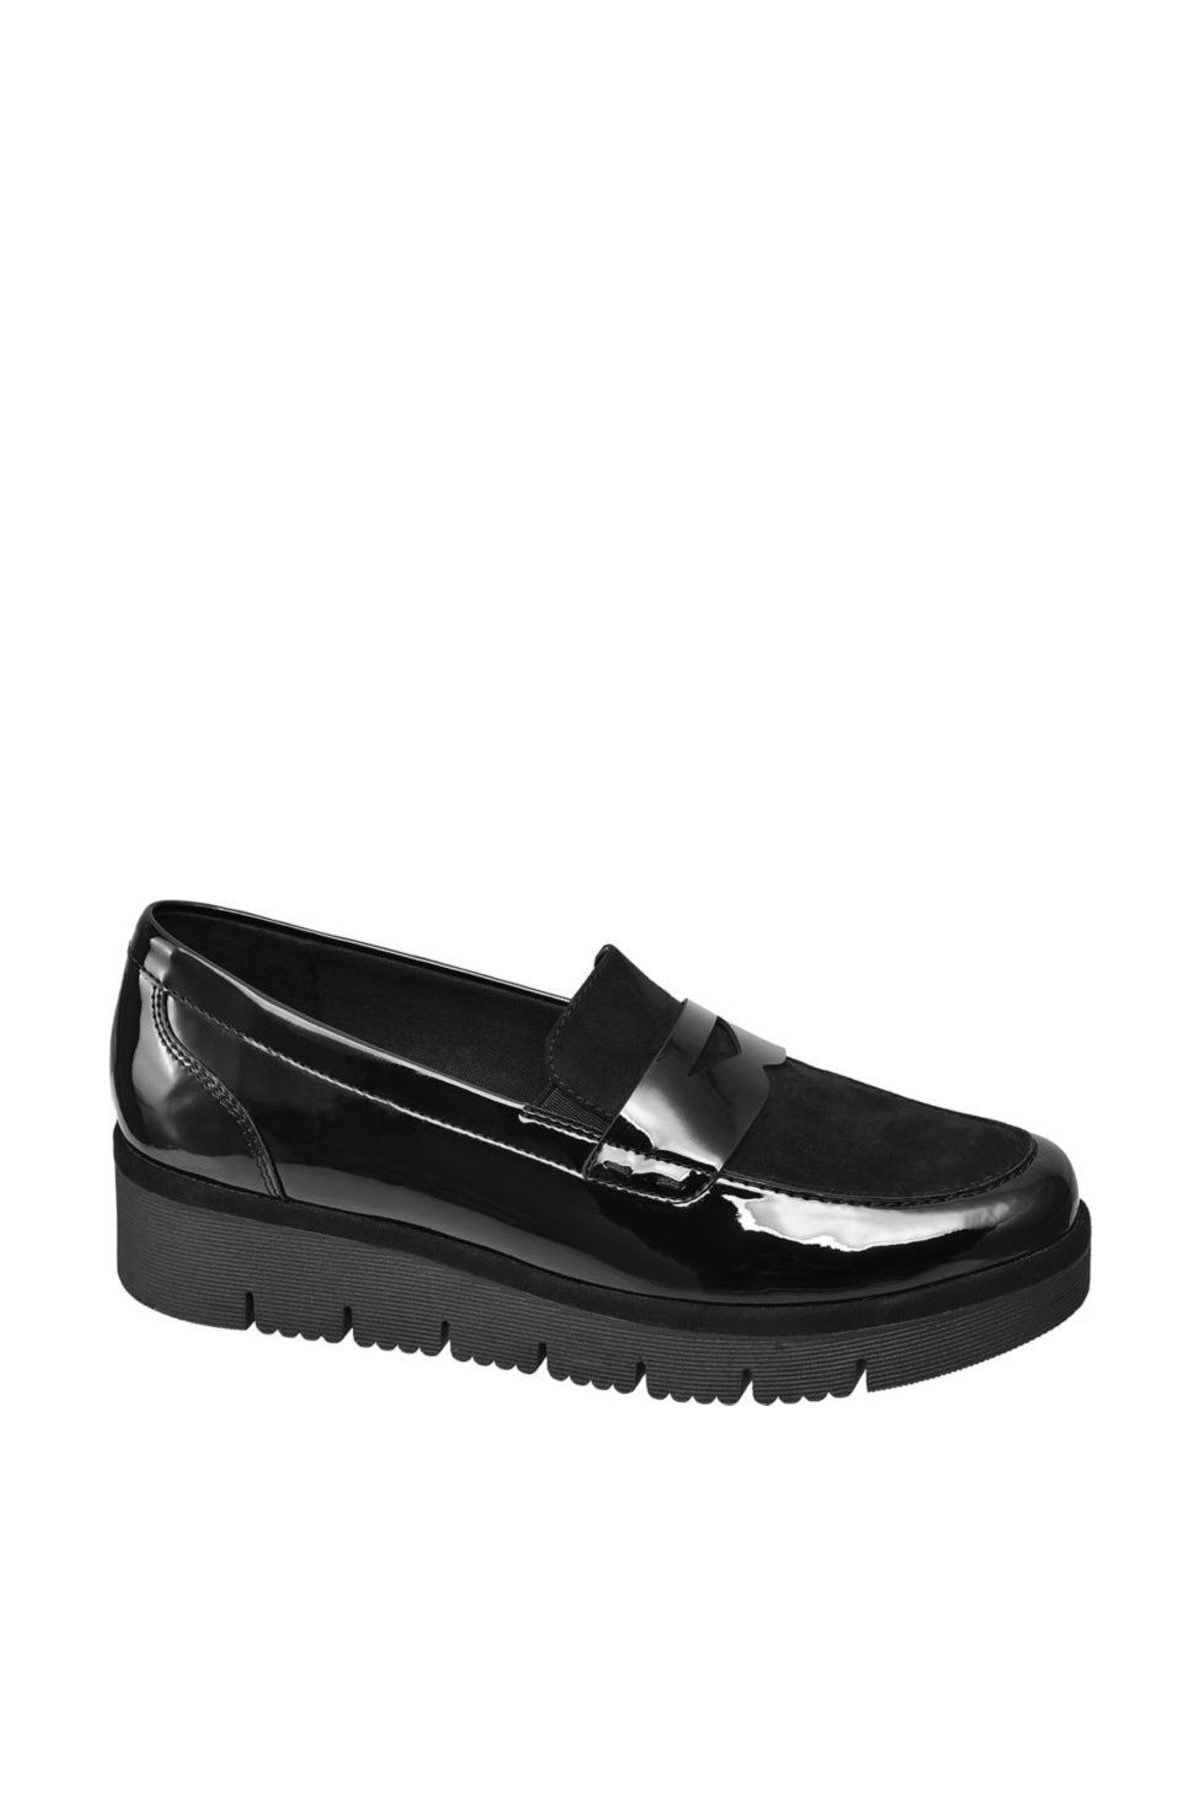 Graceland Deichmann Kadın Siyah Loafer Ayakkabı